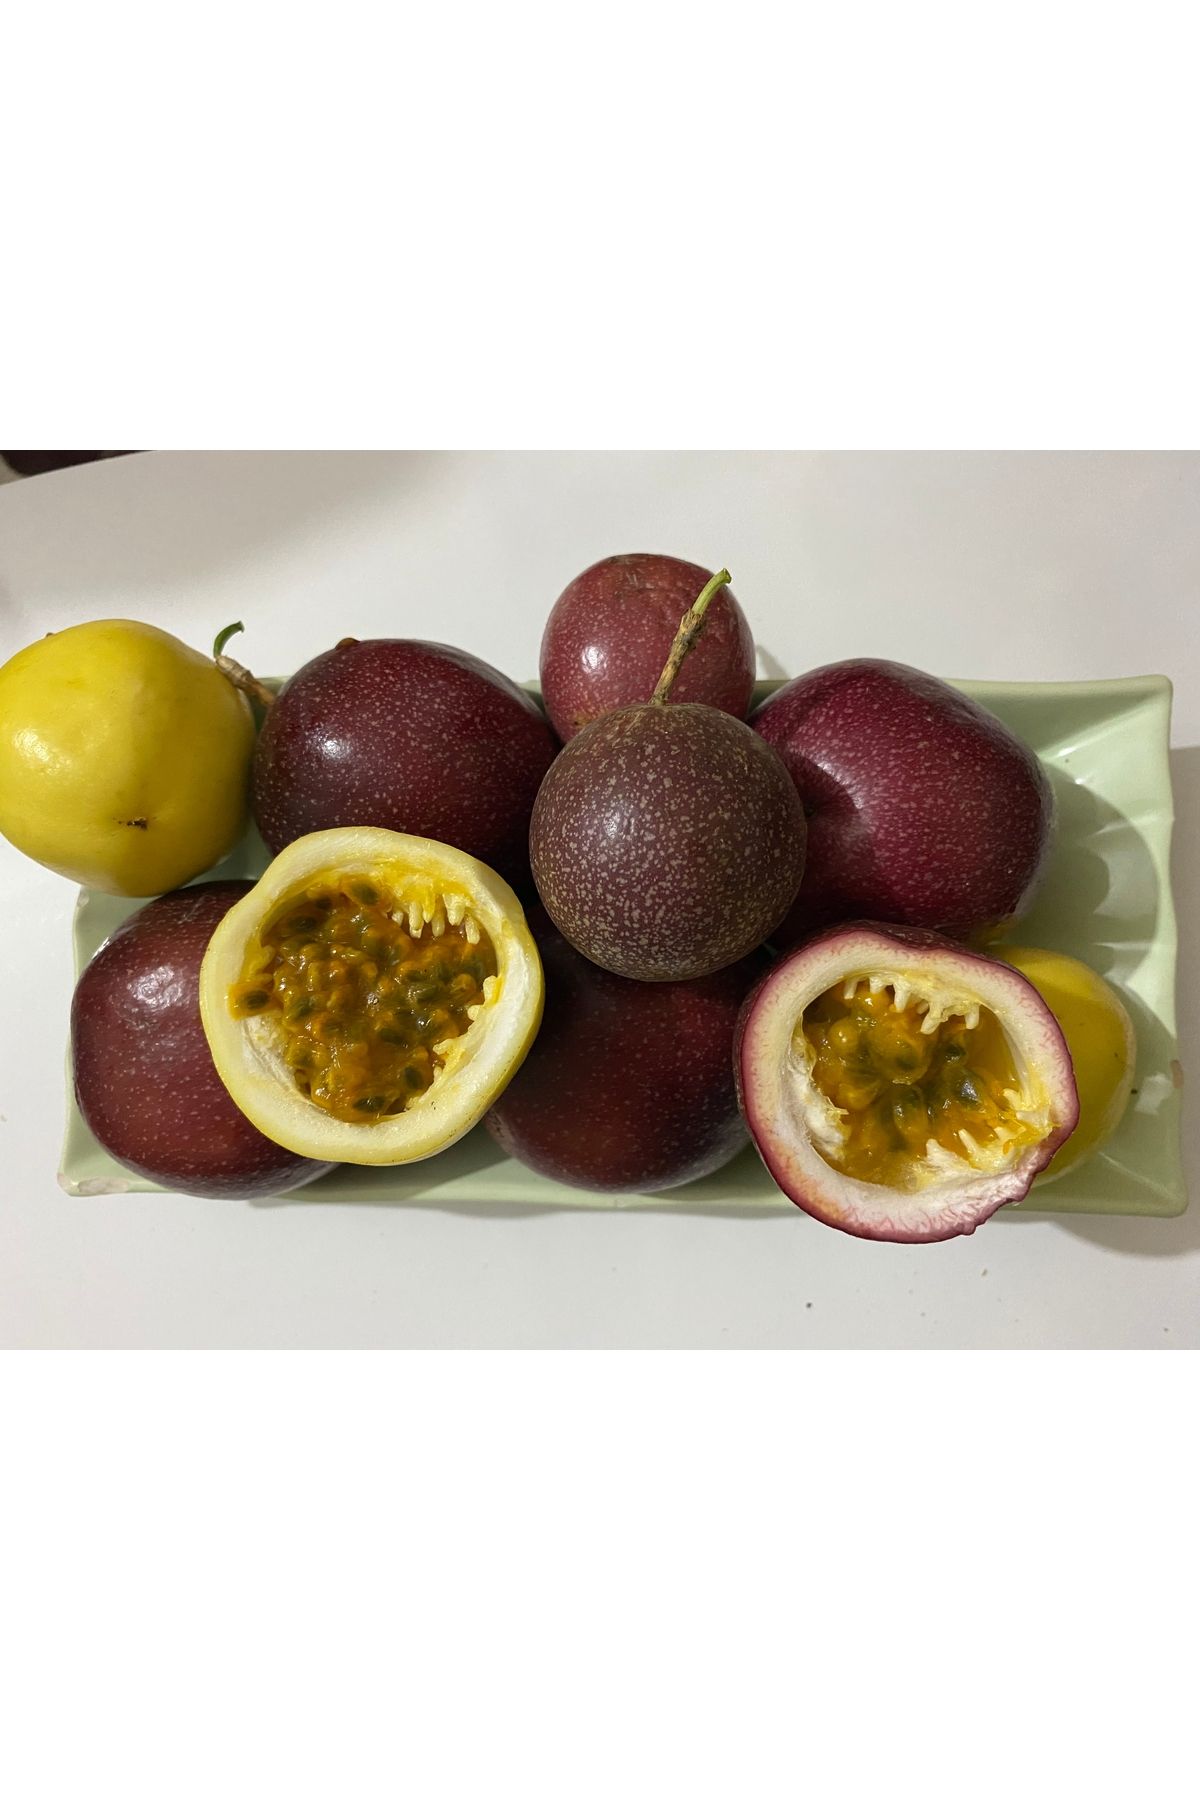 ANAMURMEYVECİM Pasiflora Çarkıfelek Meyvesi 1kg.